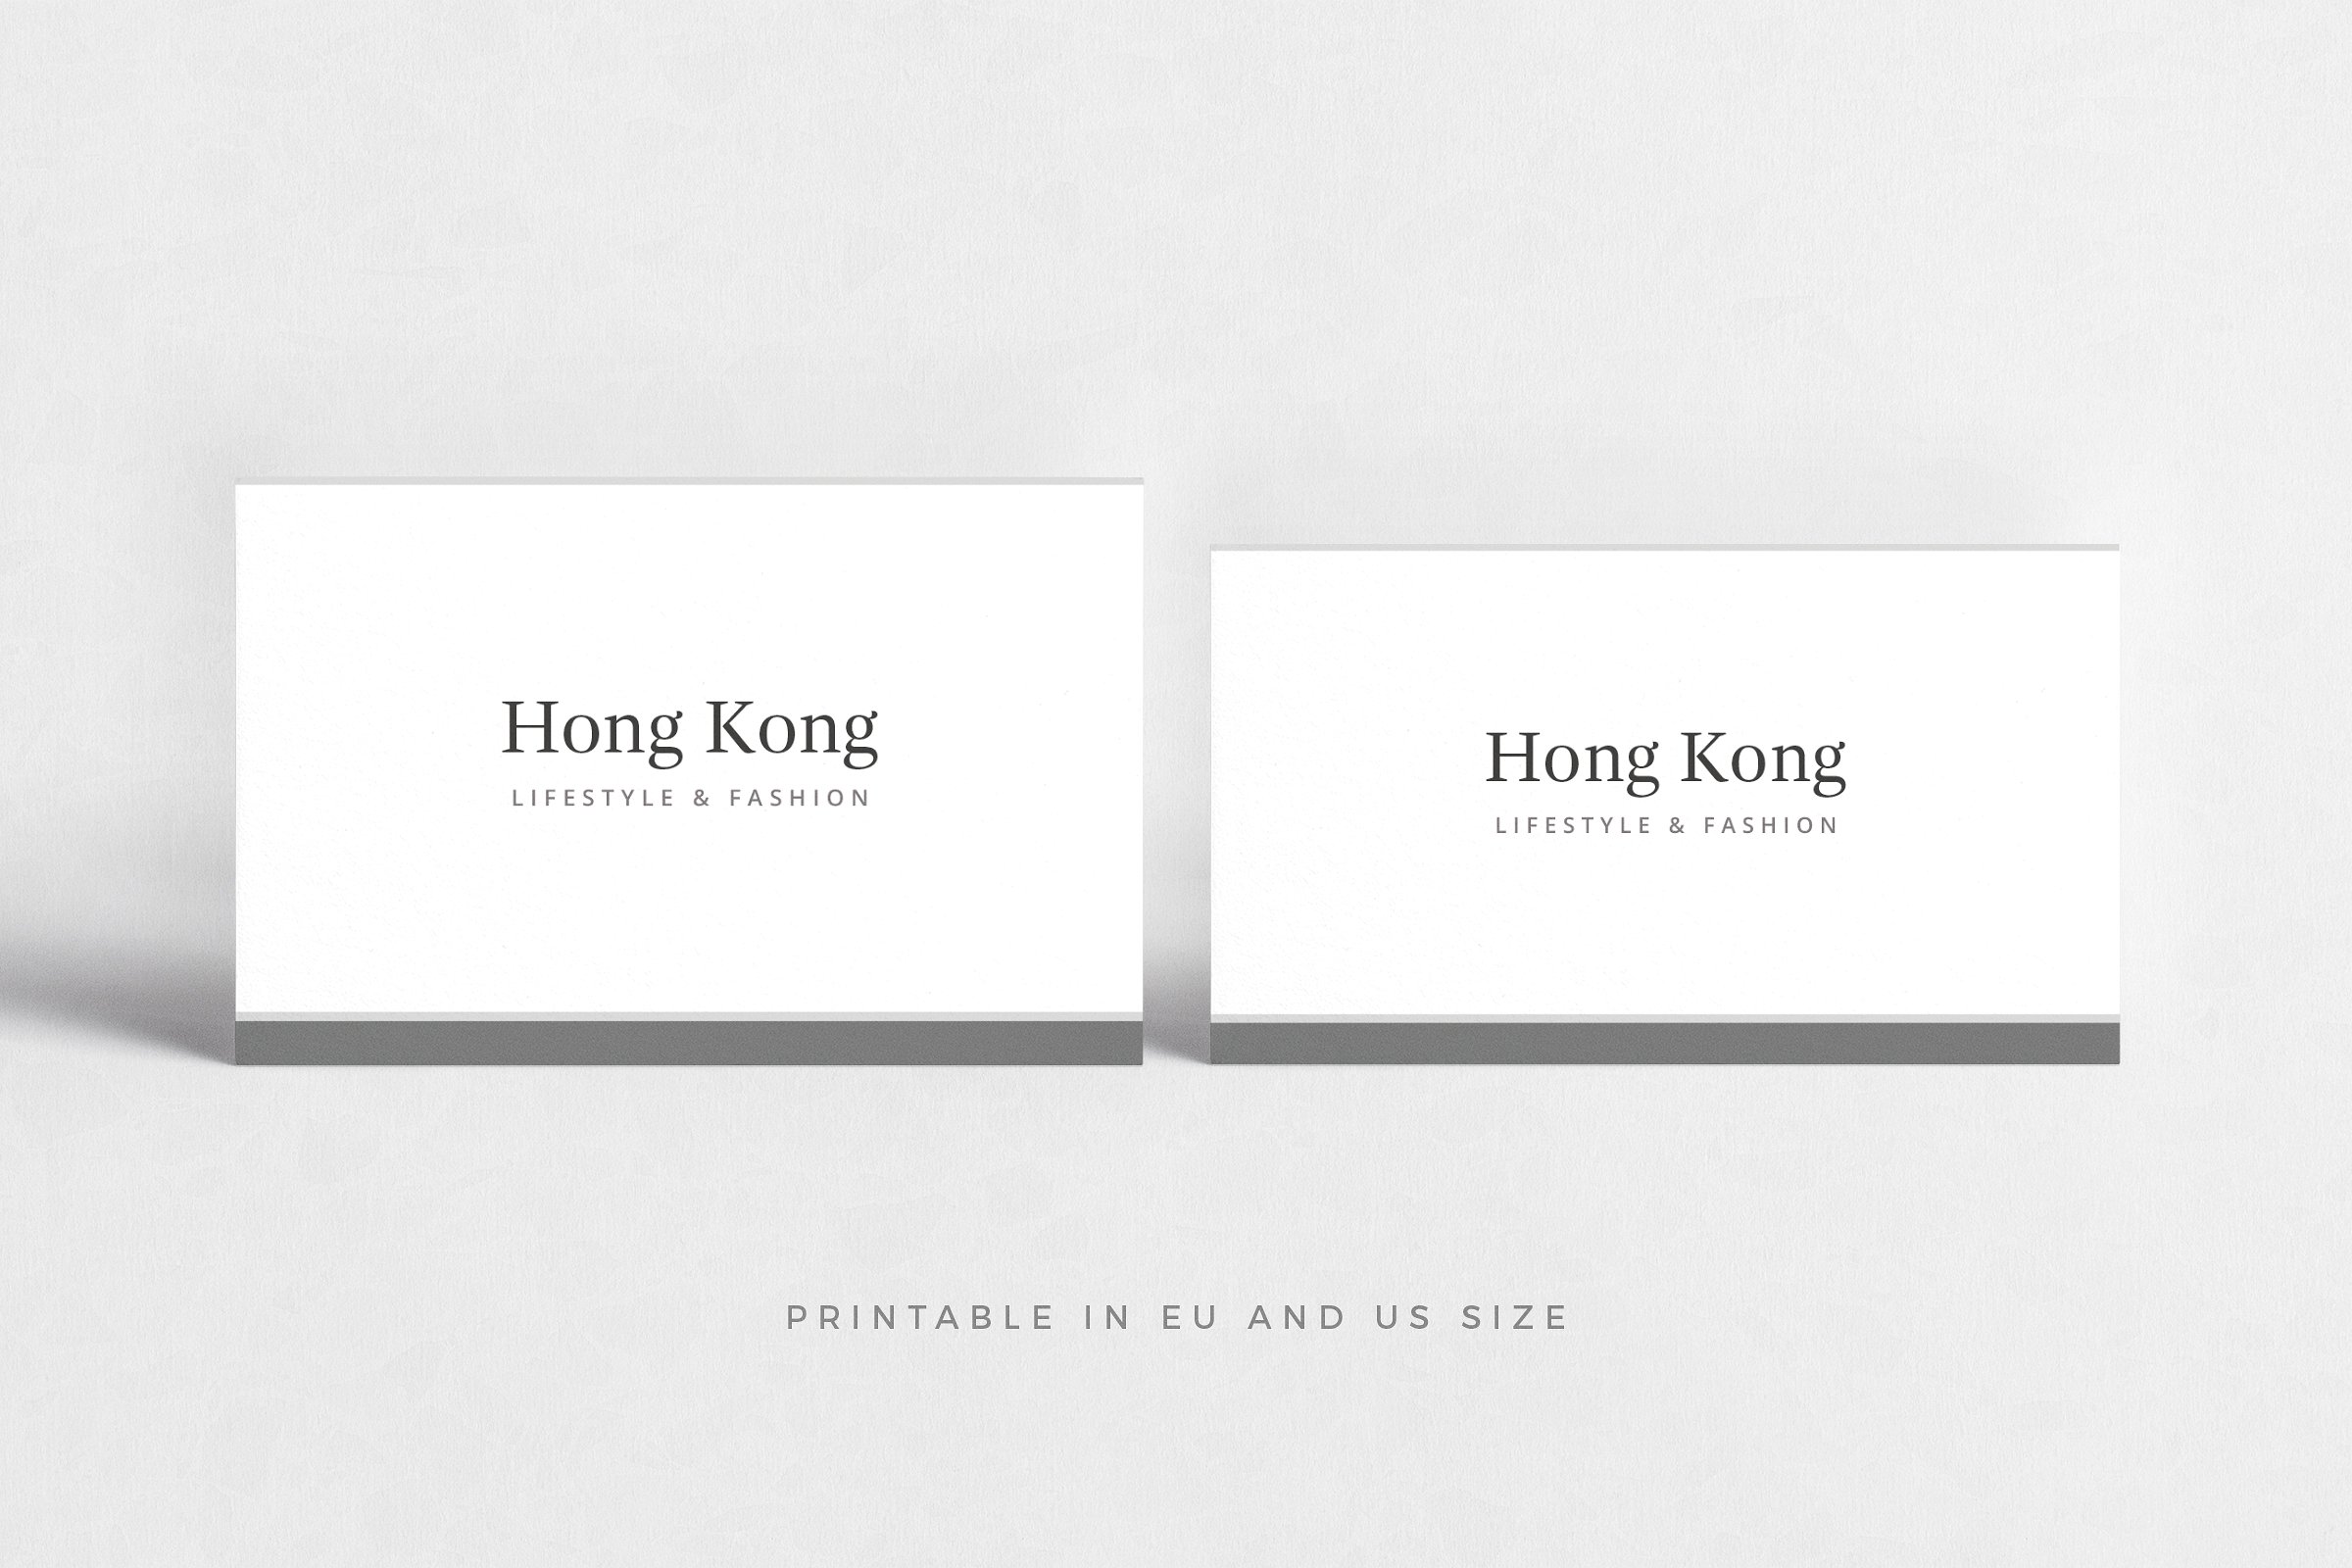 极简主义企业名片设计模板4 Hong Kong Business Card插图(2)